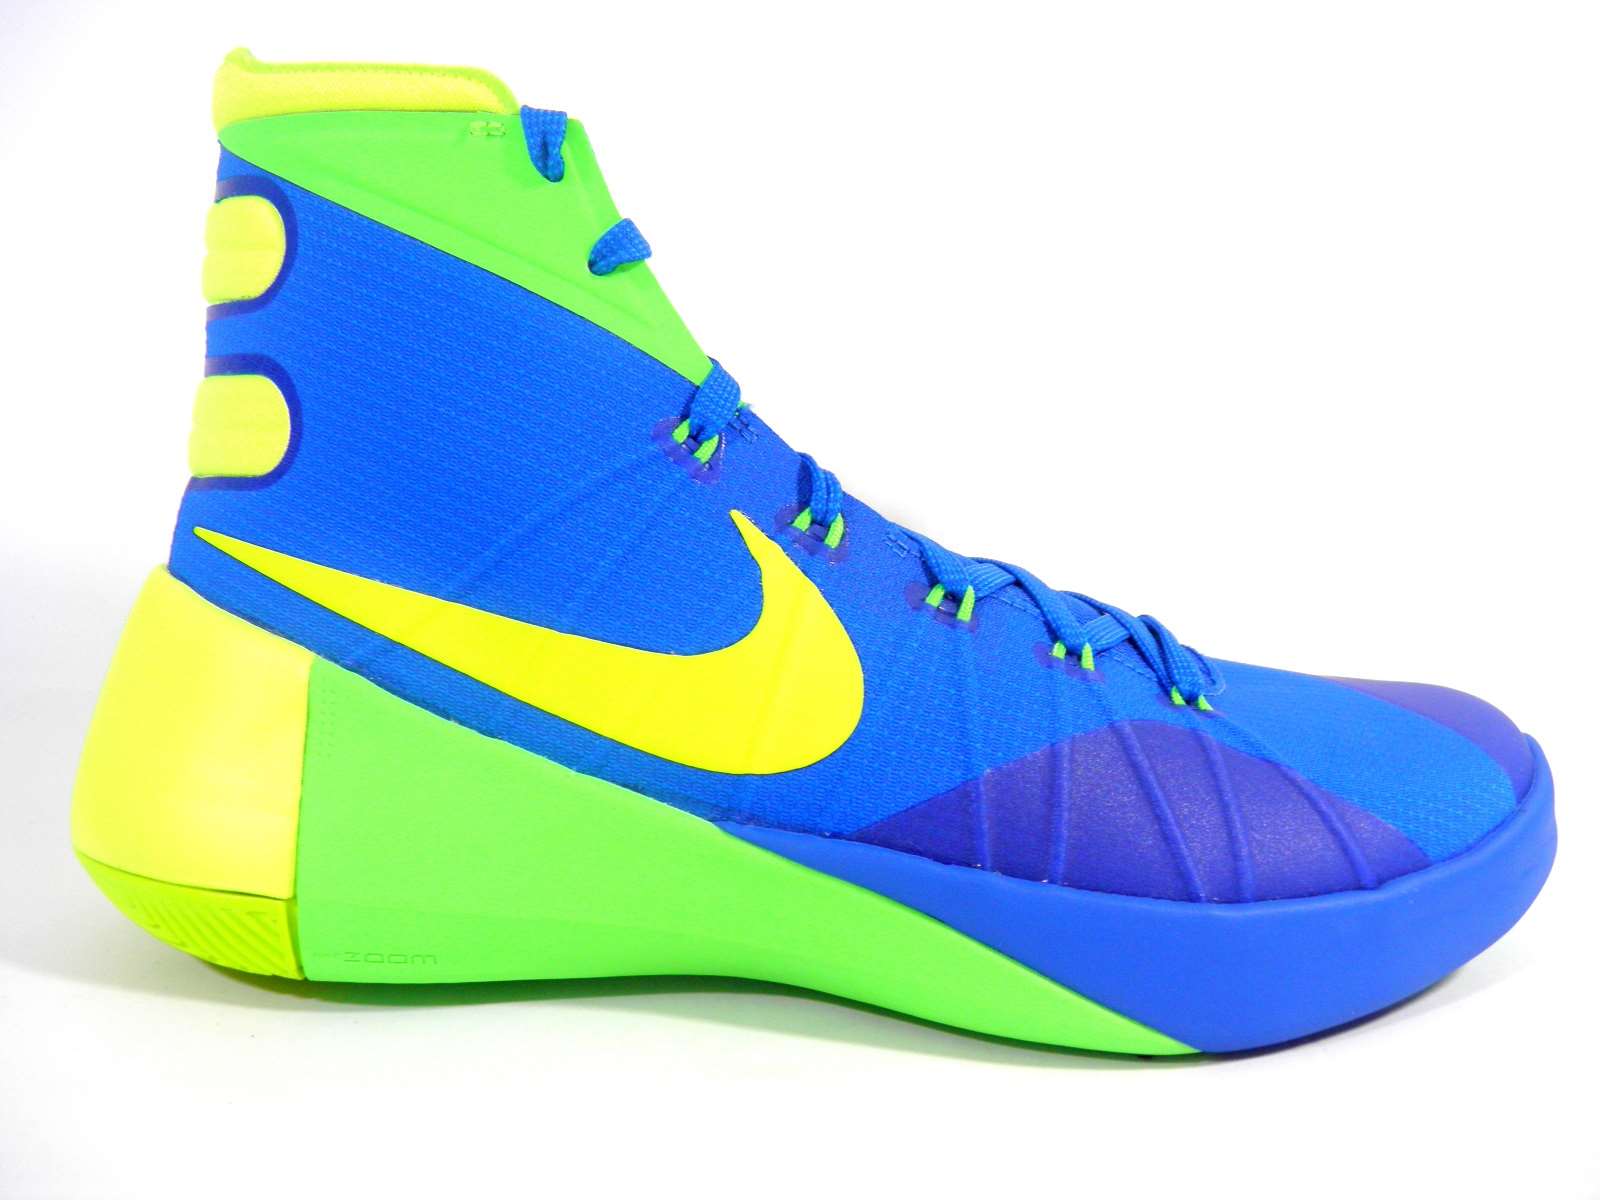  خرید  کفش بسکتبال نایک هایپردانک آبی سبز 2015 Nike HyperDunk  